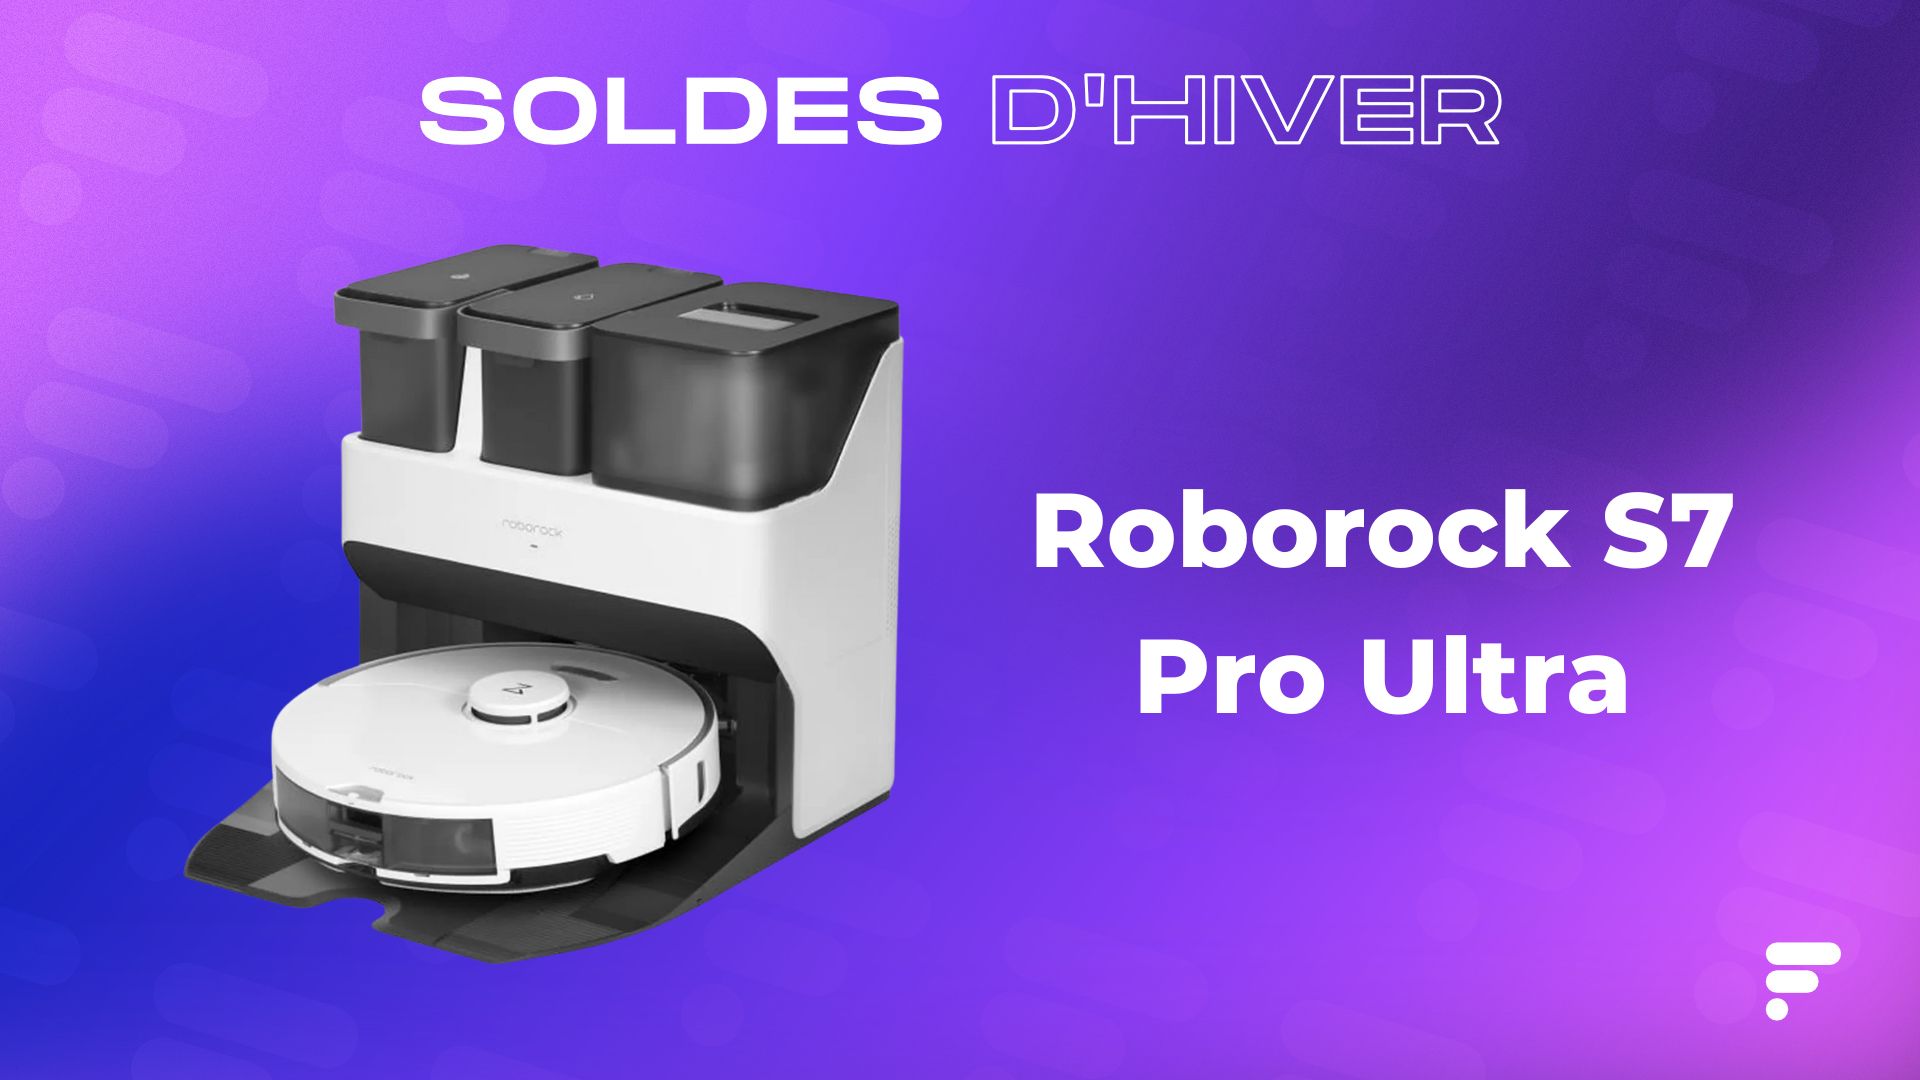 Le robot aspirateur Roborock S7 Pro Ultra est affiché en forte promotion  sur ce site marchand - Le Parisien